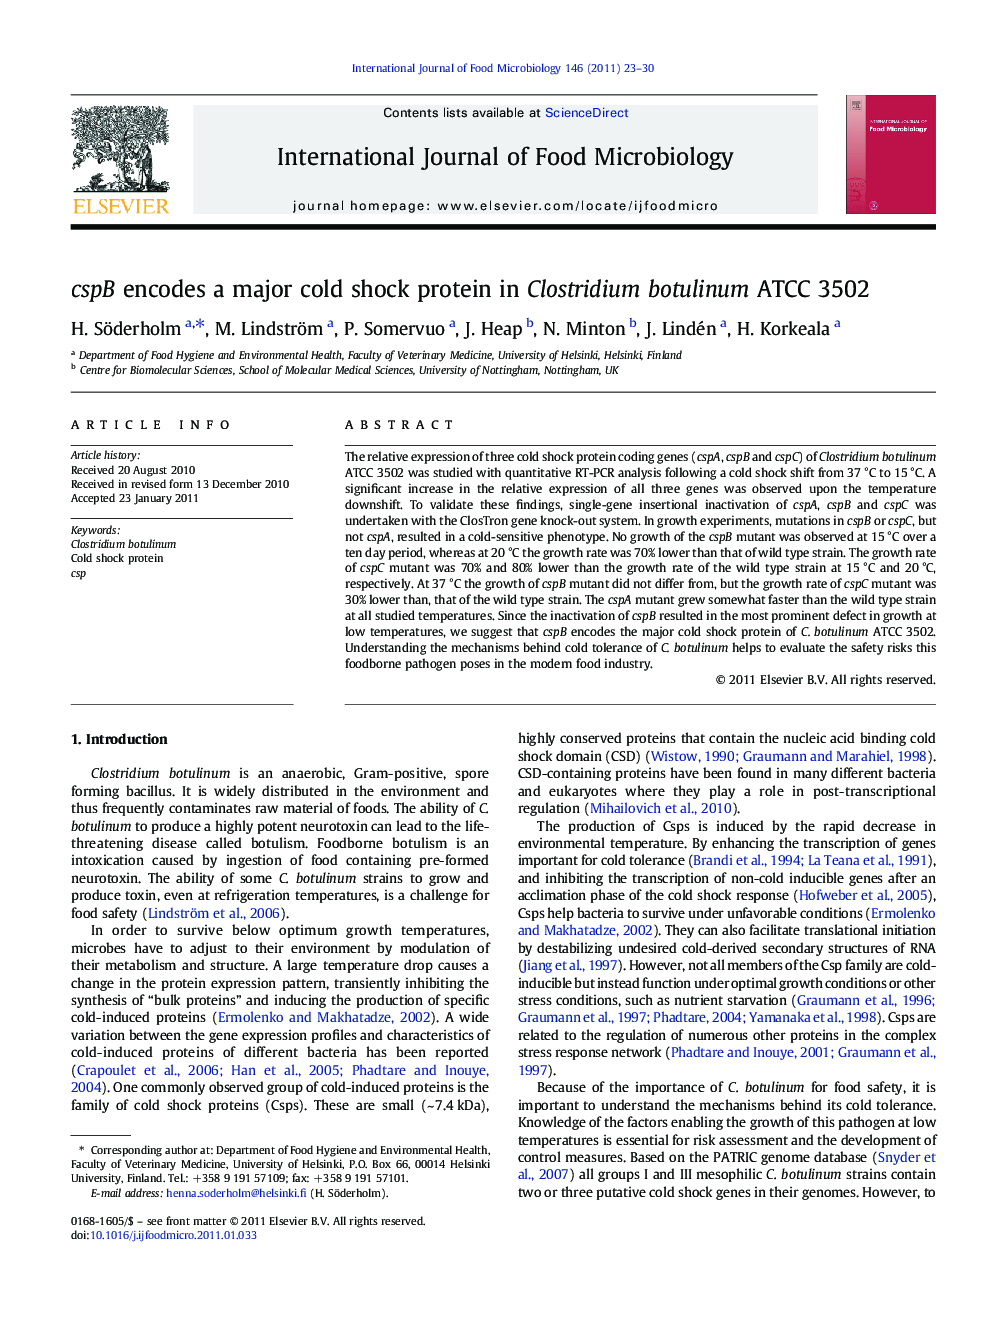 cspB encodes a major cold shock protein in Clostridium botulinum ATCC 3502